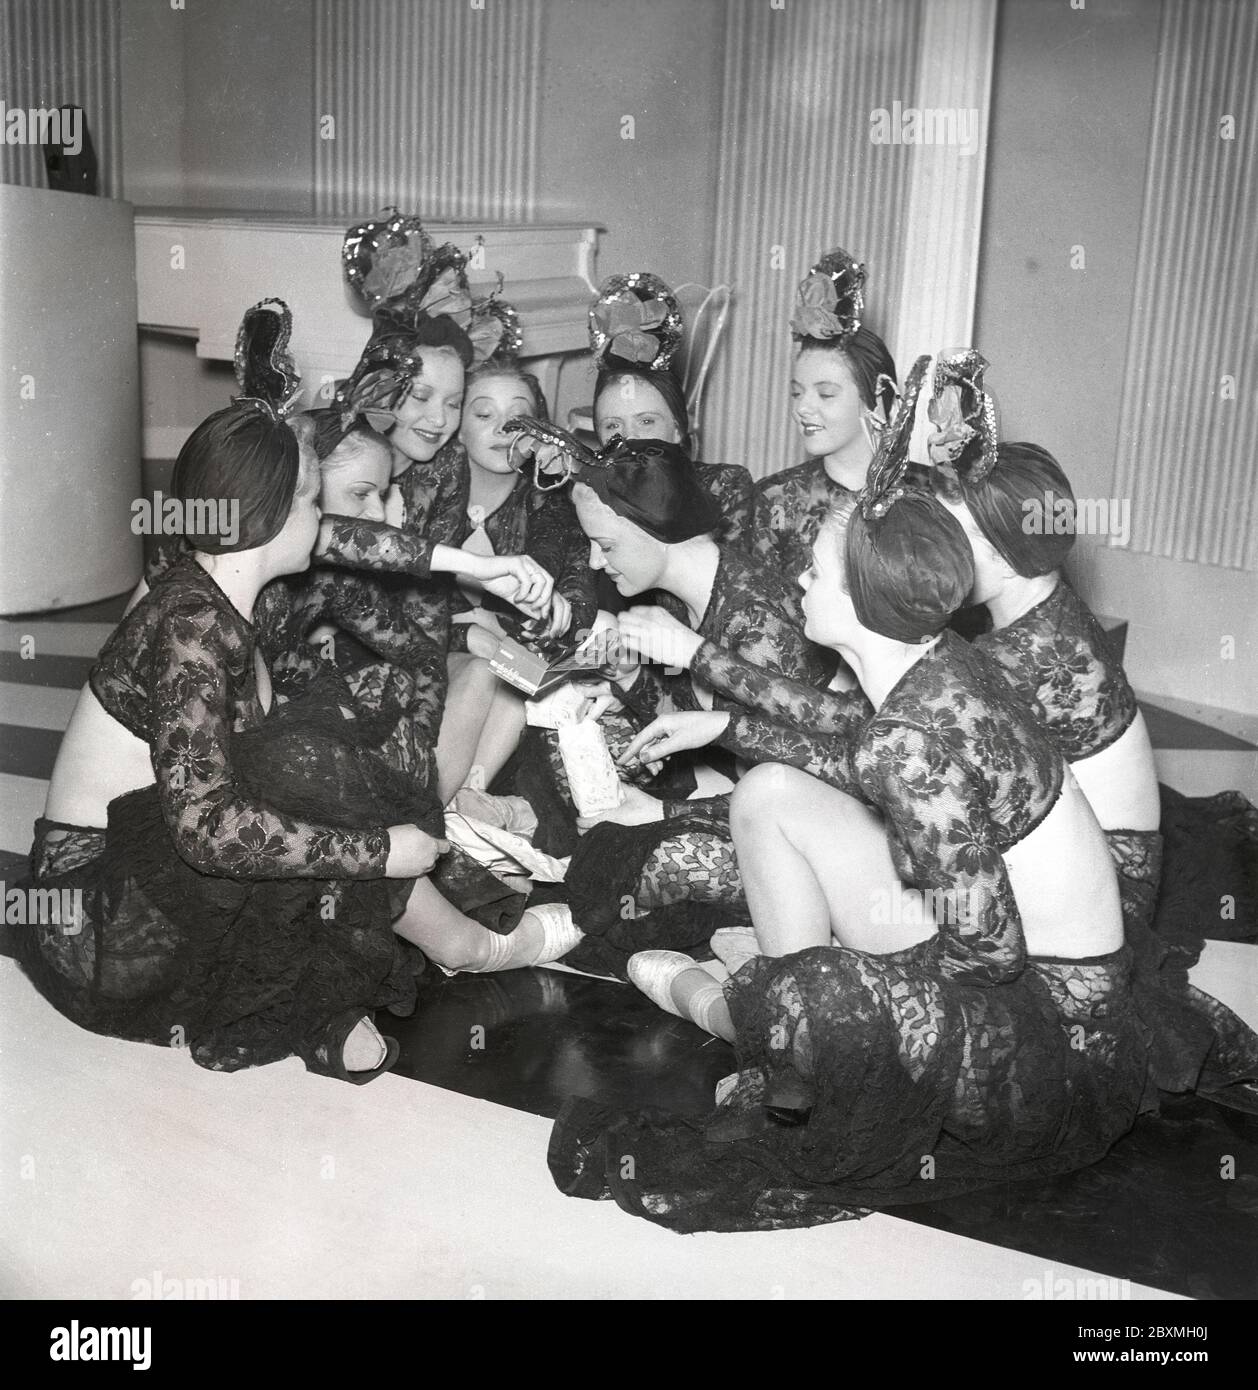 Cioccolato negli anni '40. Un gruppo di donne sta mangiando da una scatola di cioccolatini su un set di film. Sembrano tutti interessati ad avere un pezzo di cioccolato. È il marchio Aladdin più venduto della società svedese Marabou che 1939 è stato il primo con l'imballaggio e la vendita di cioccolato. Conteneva 18 dei suoi cioccolatini più venduti. Svezia 1943. Kristoffersson rif D95-3 Foto Stock